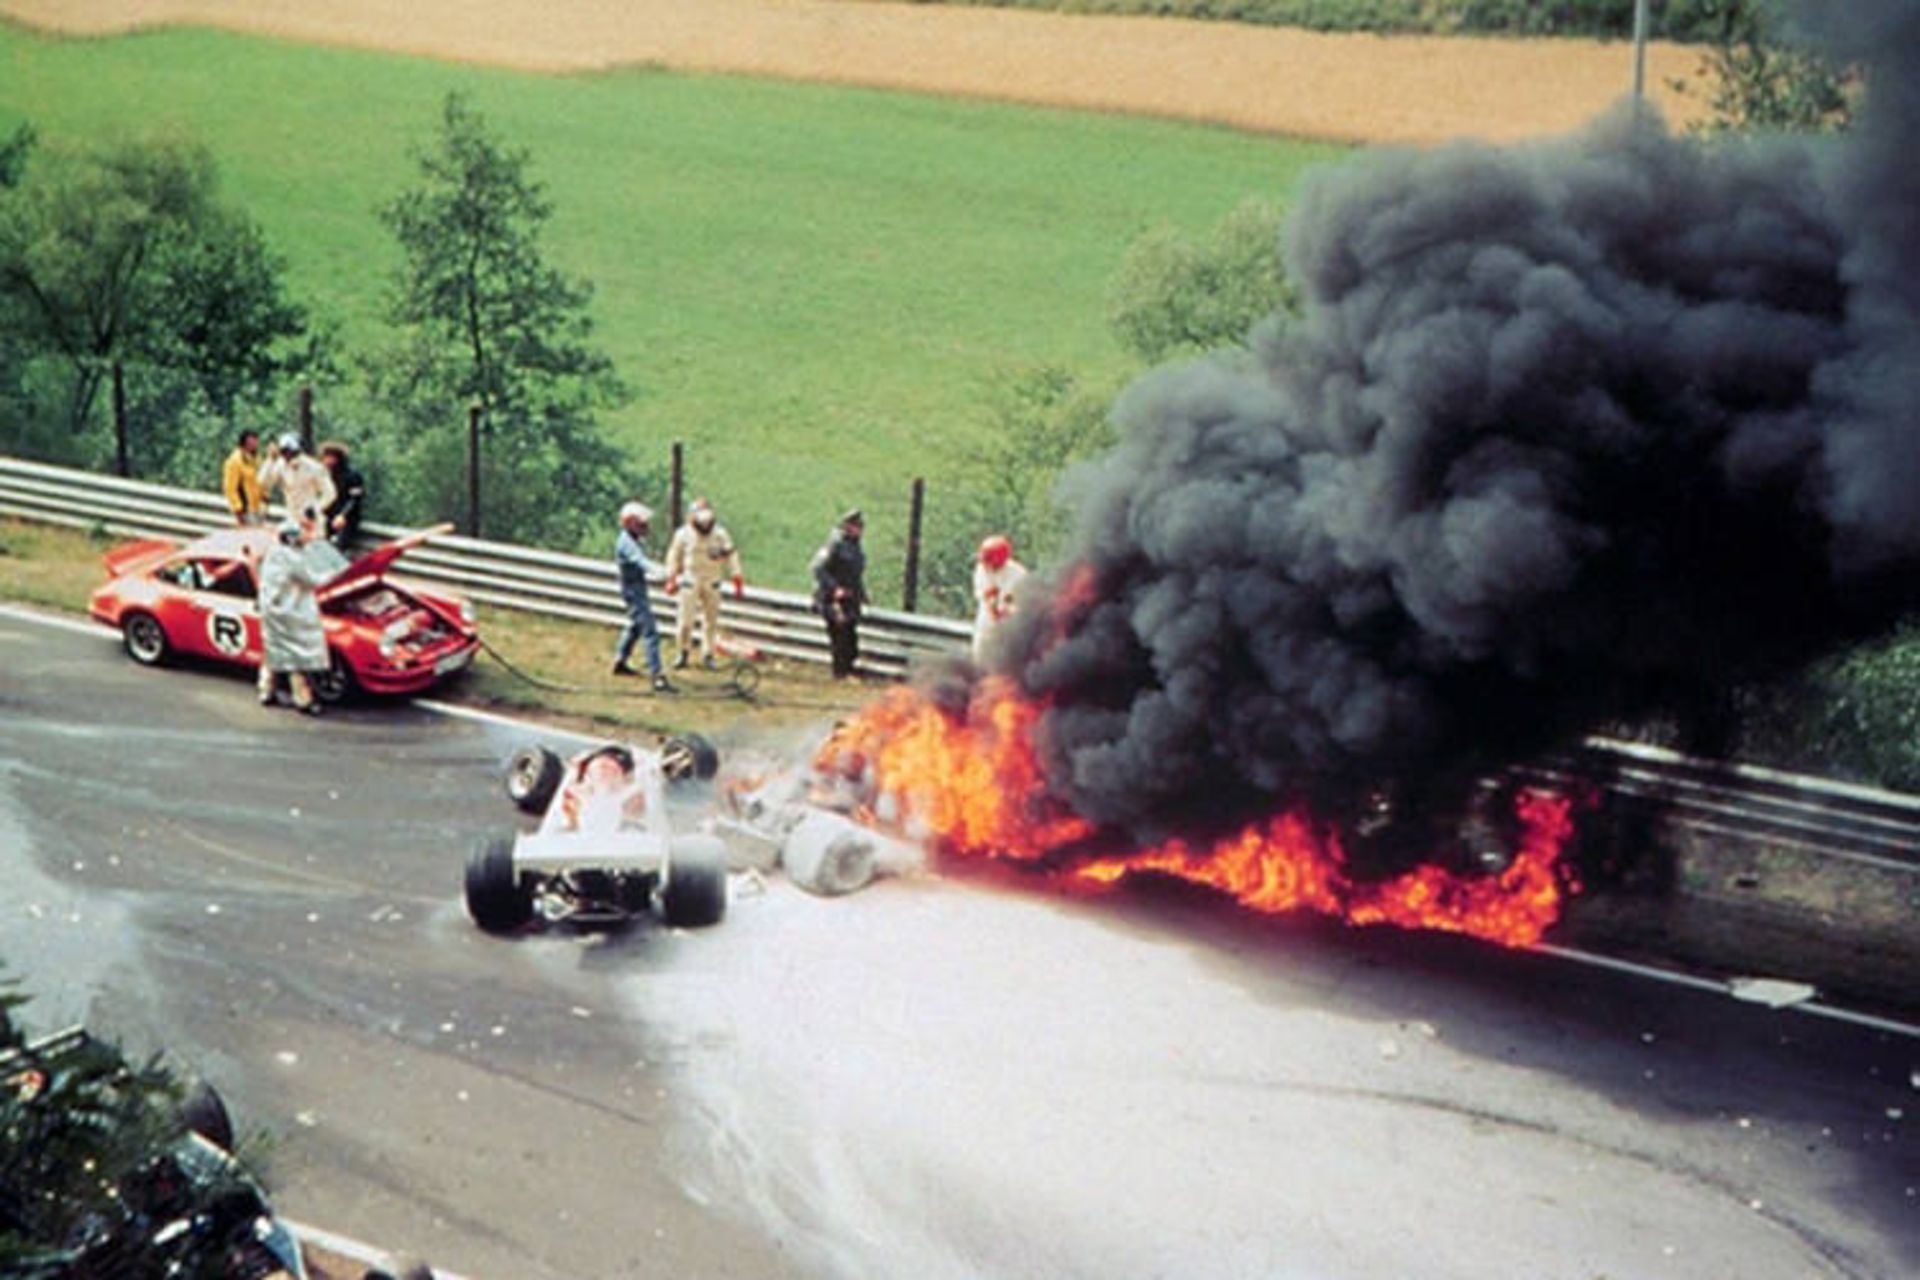 Niki Lauda 1976 crash